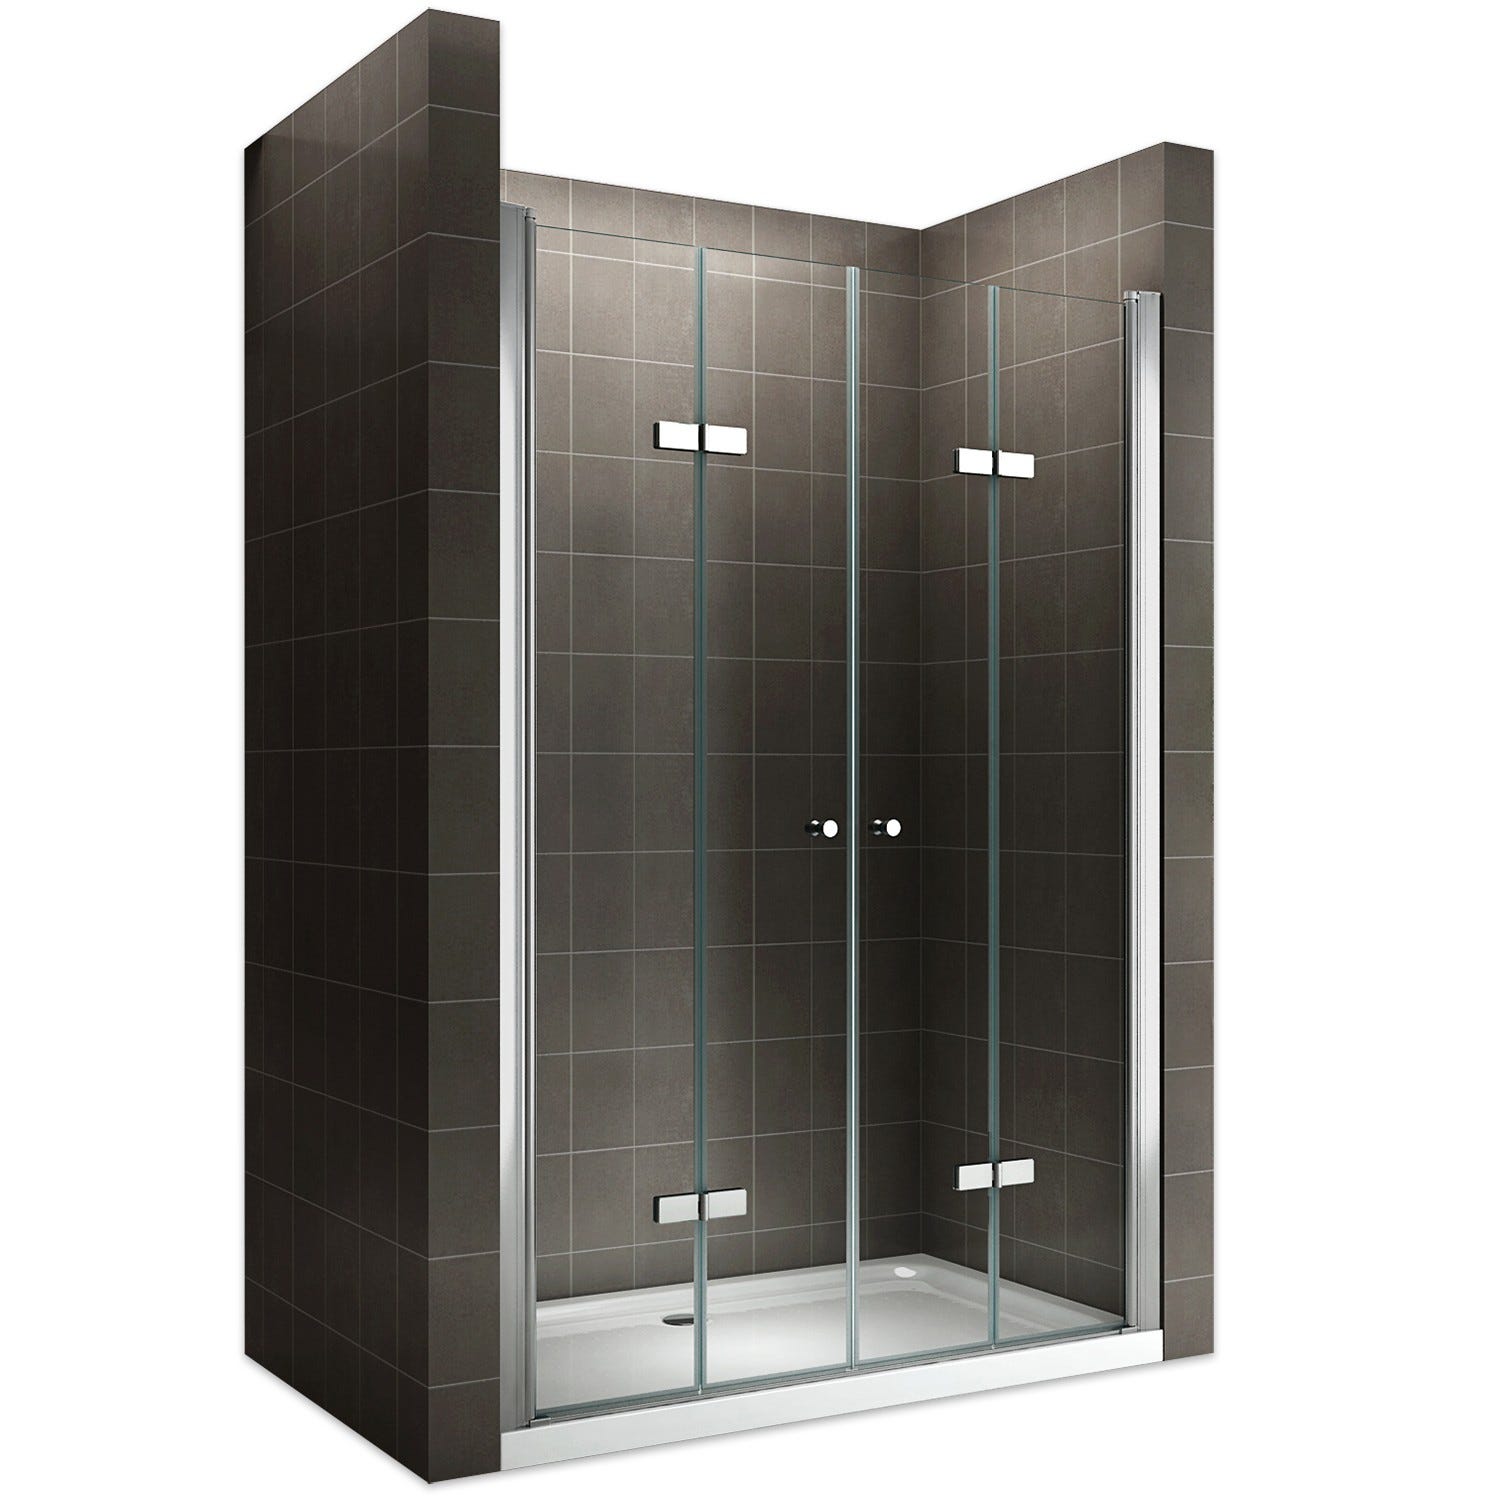 EMMY Porte de douche pliante pivotante H 185 cm largeur réglable 136 à 140 cm verre transparent 0